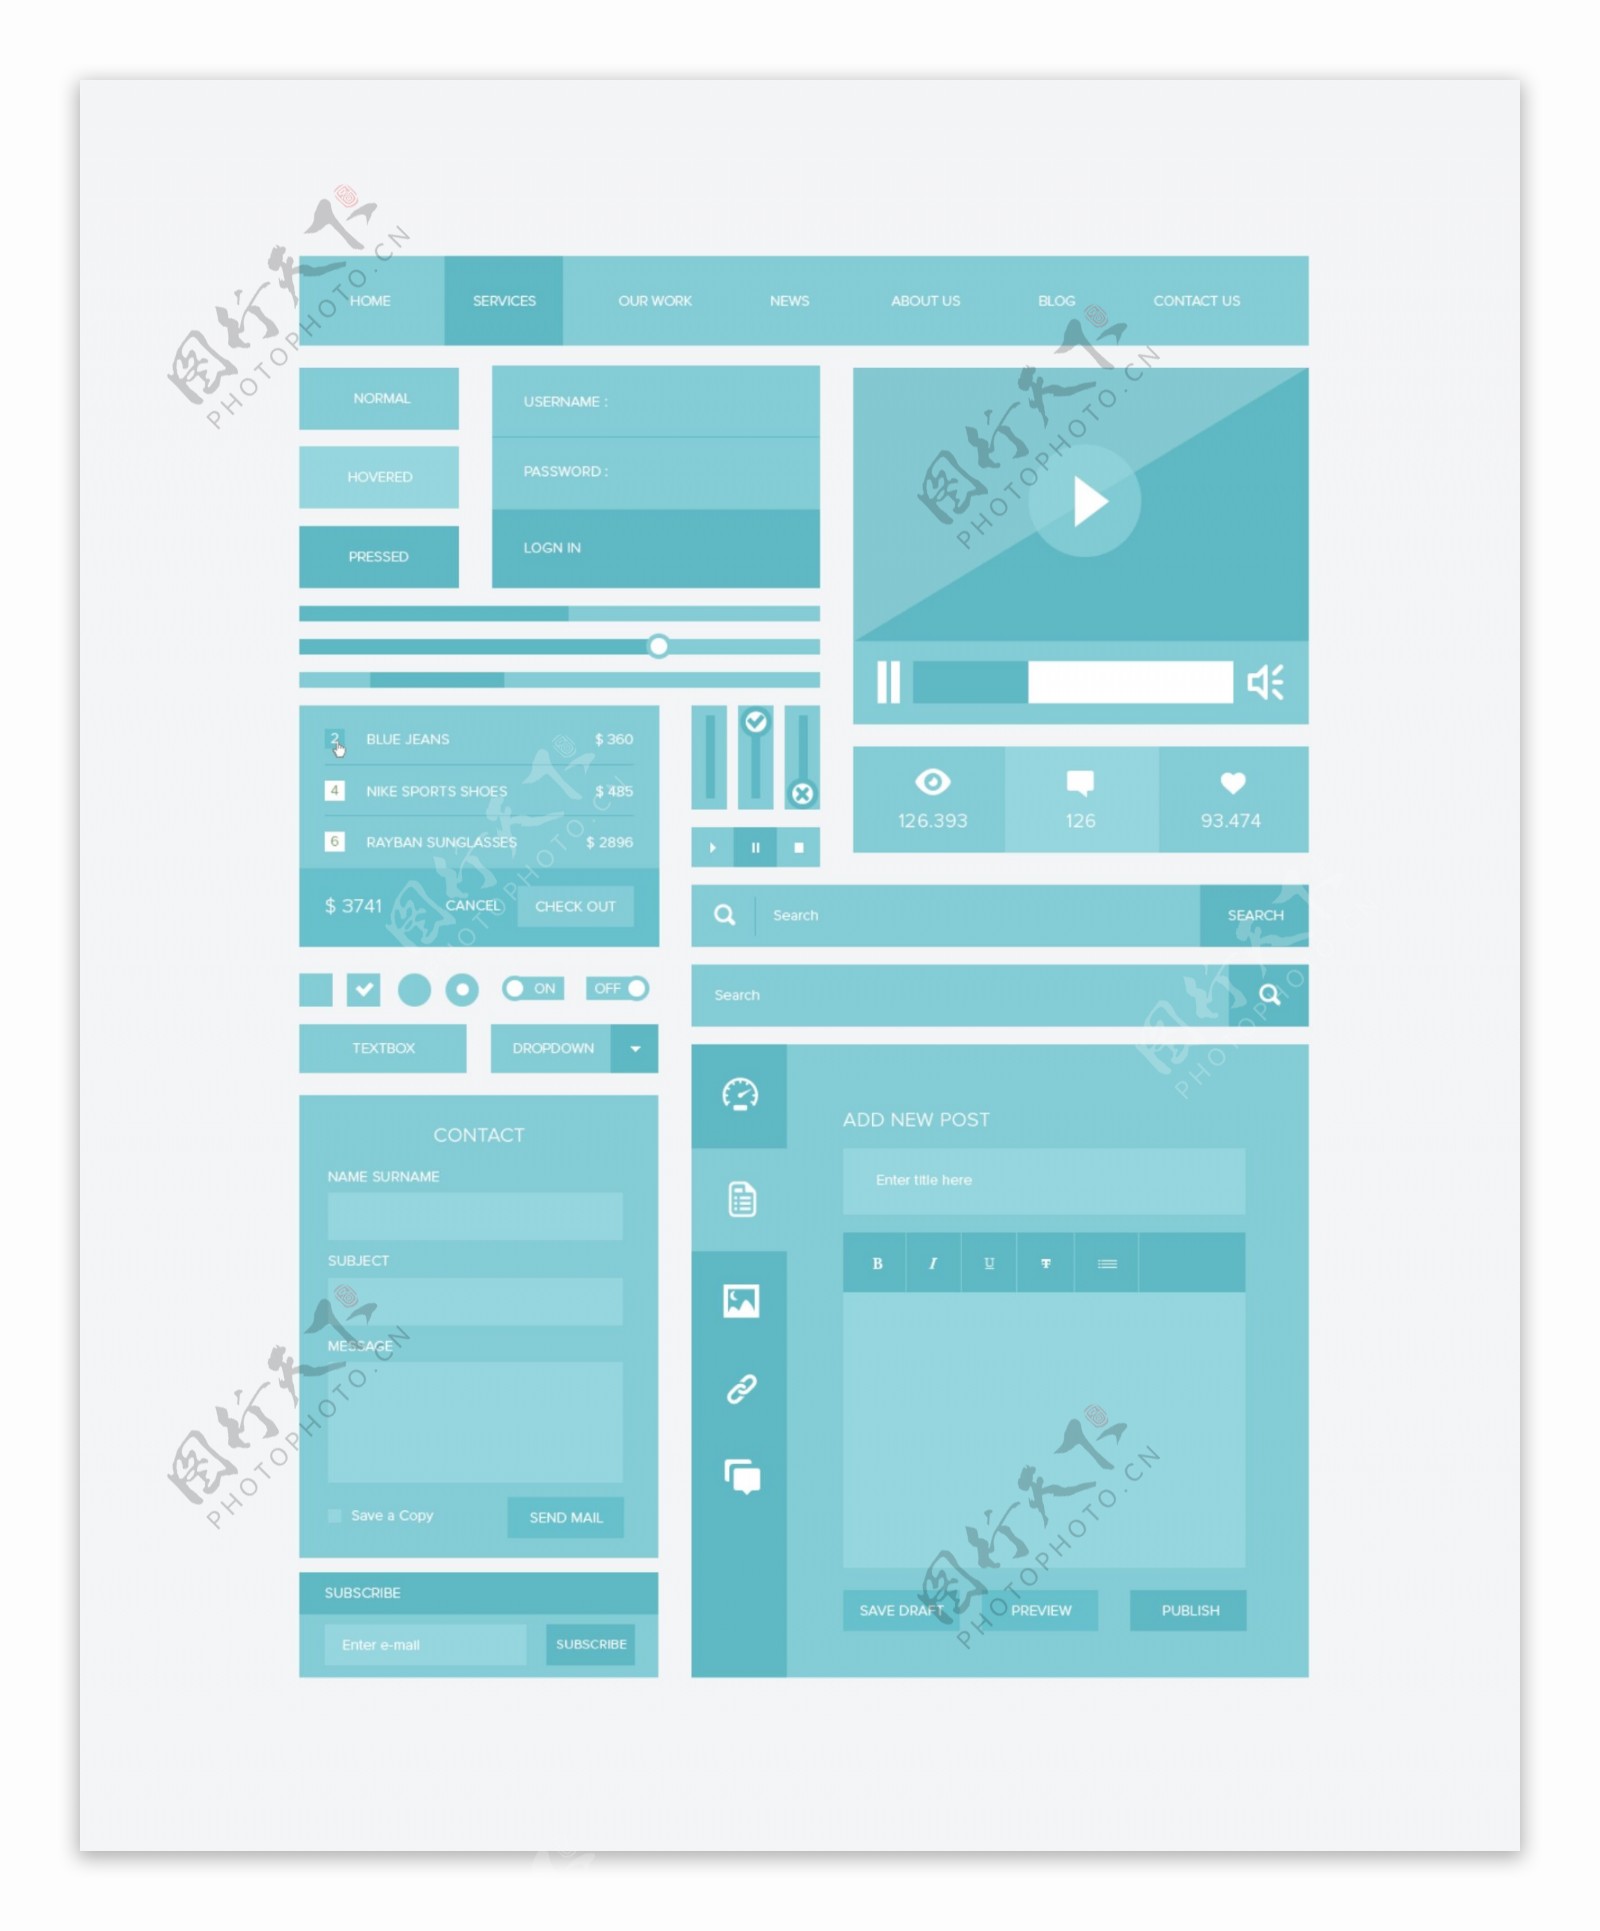 蓝色扁平化设计风格网页模板PSD素材